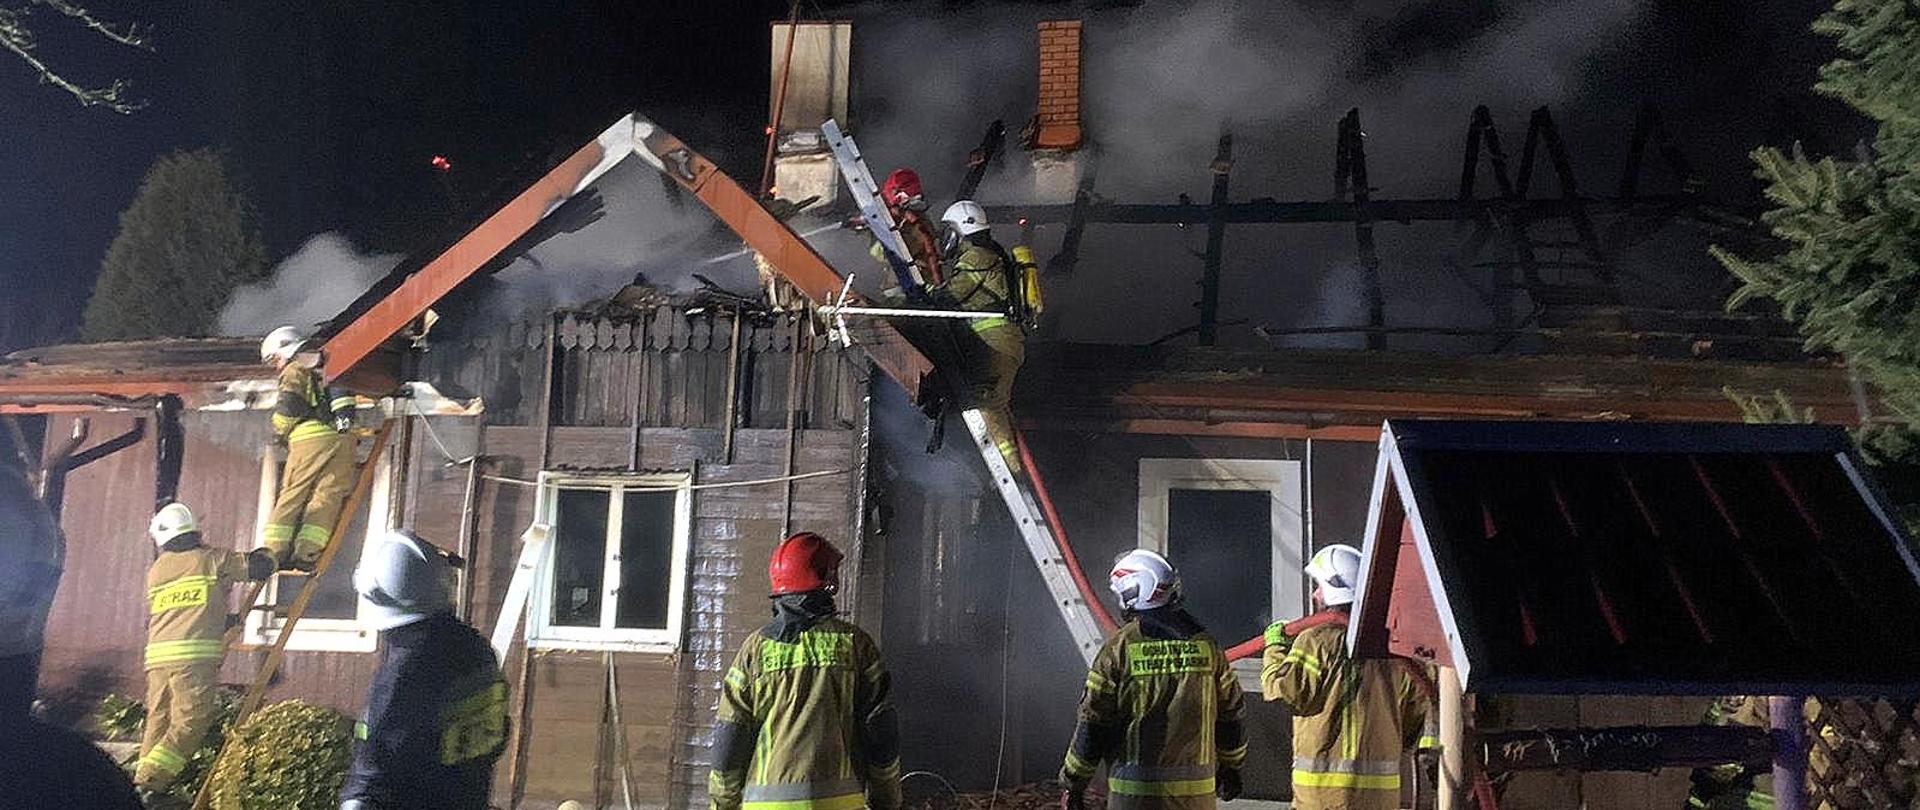 Zdjęcie zrobione na zewnątrz w nocy. Strażacy gaszą płonący dom. Czterech z nich stoi na drabinach przedstawionych do budynku gasząc pożar. Dookoła stoją strażacy uczestniczący w działaniach gaśniczych.